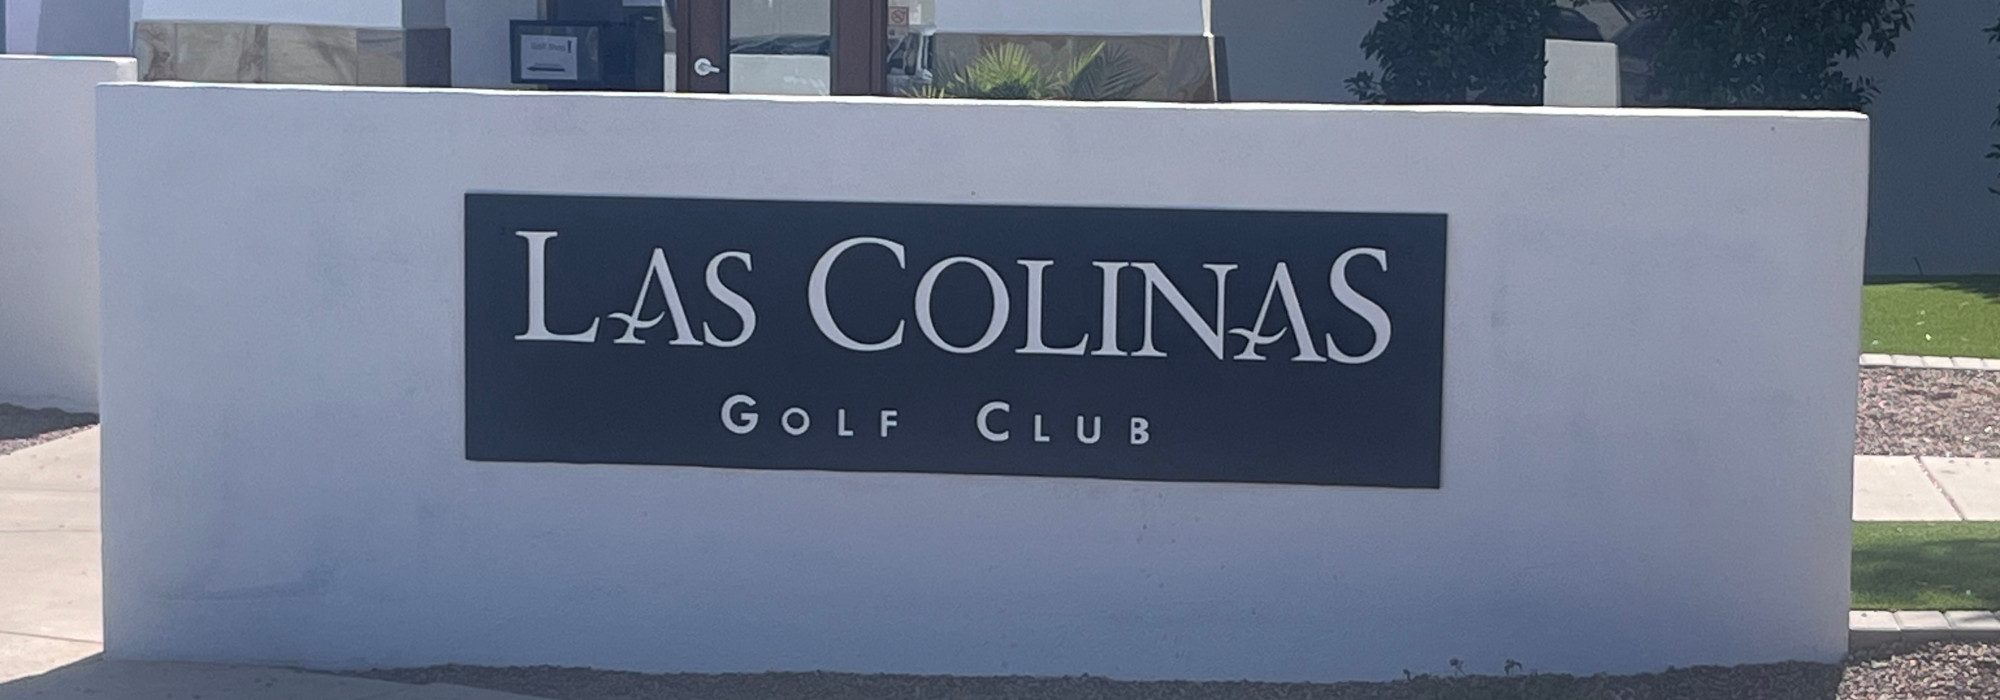 Las Colinas Golf Club - Queen Creek, AZ